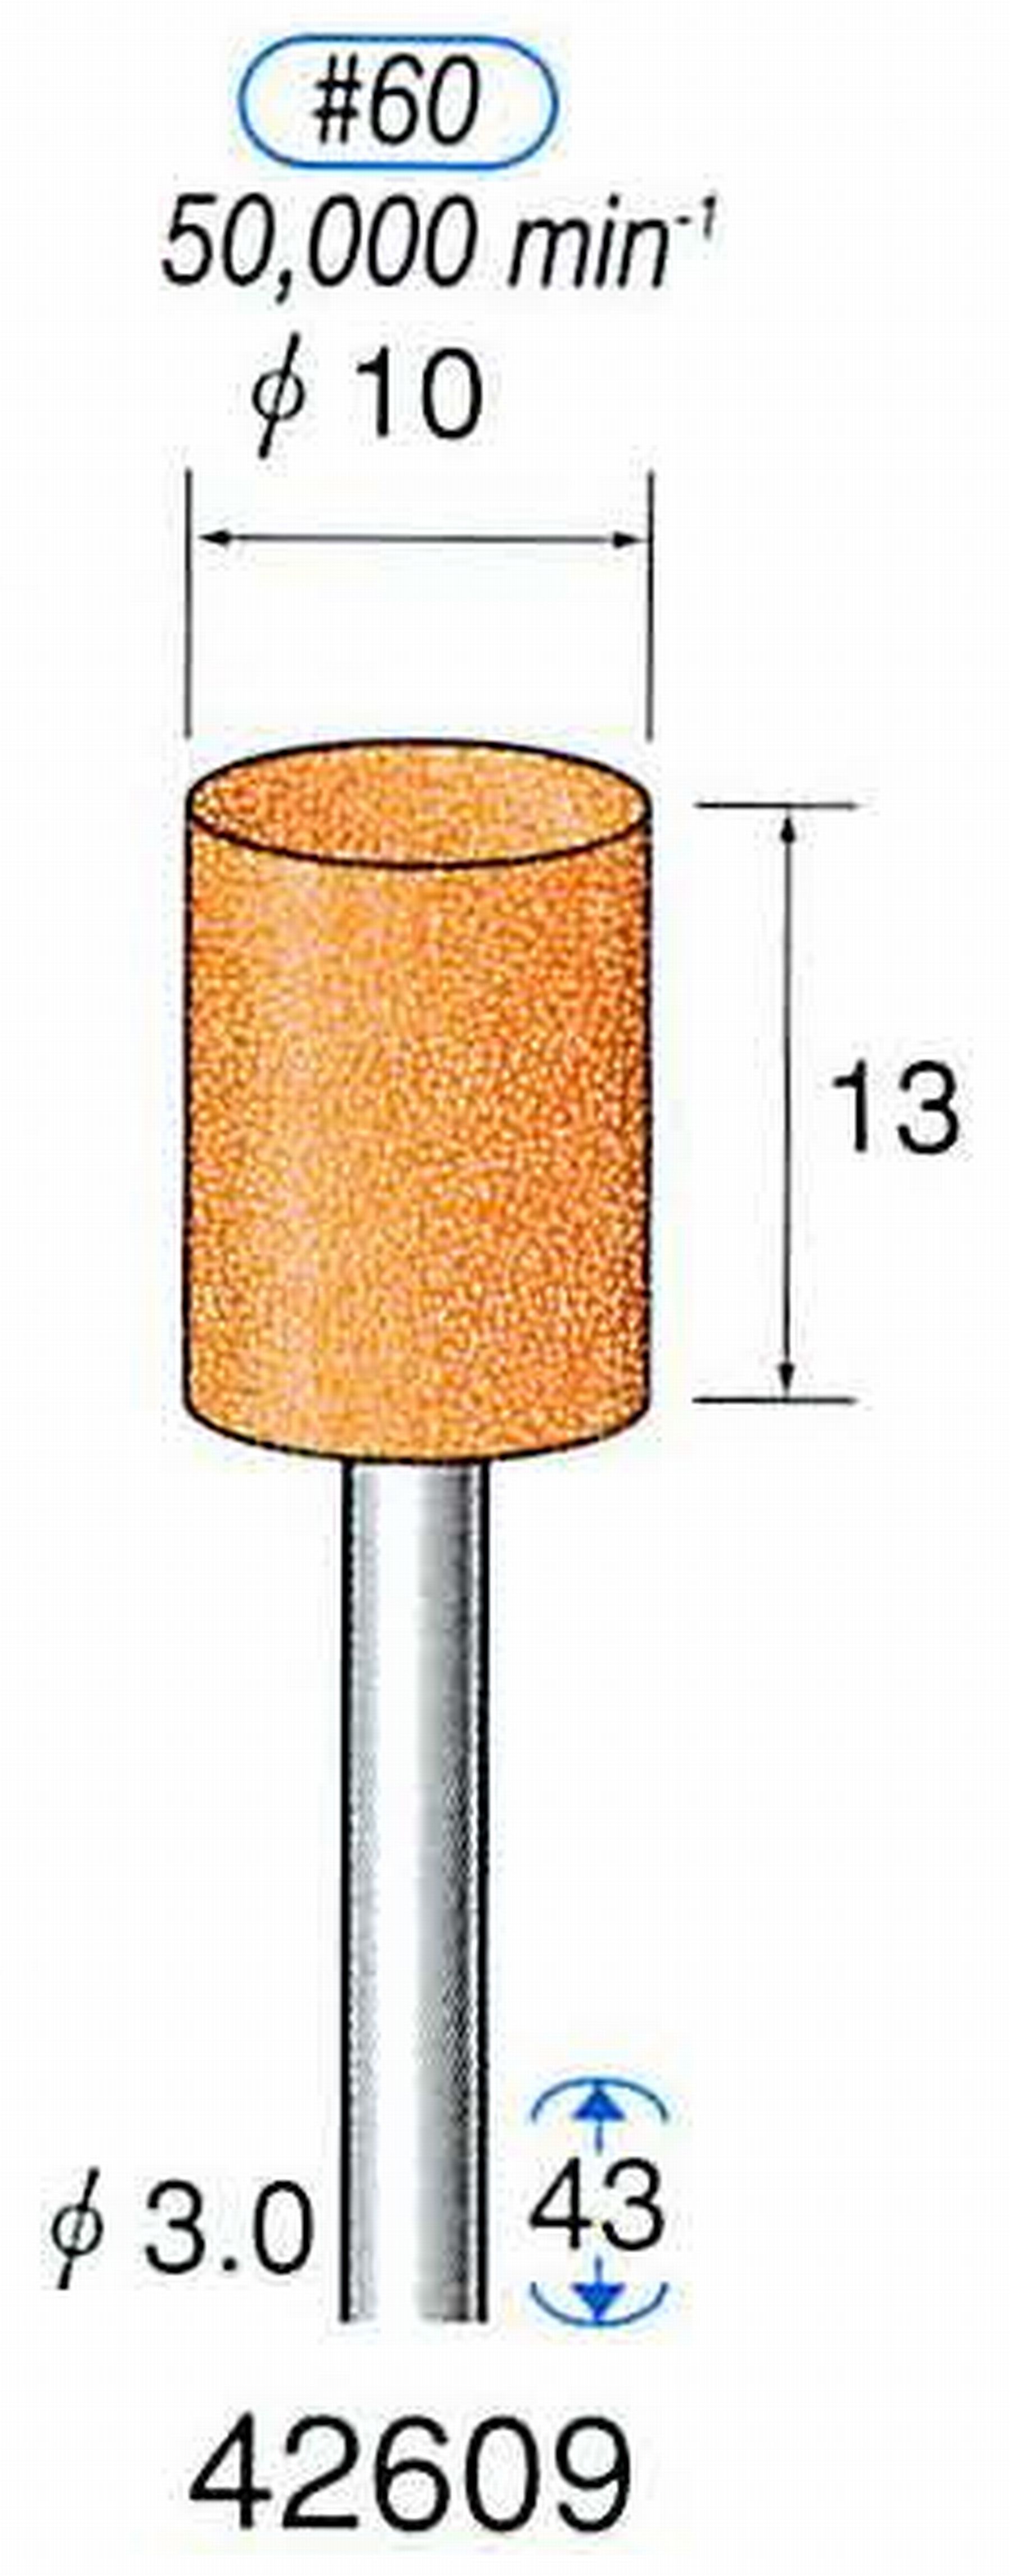 ナカニシ/NAKANISHI 軸付砥石(WA砥粒) 一般研削用 軸径(シャンク) φ3.0mm 42609